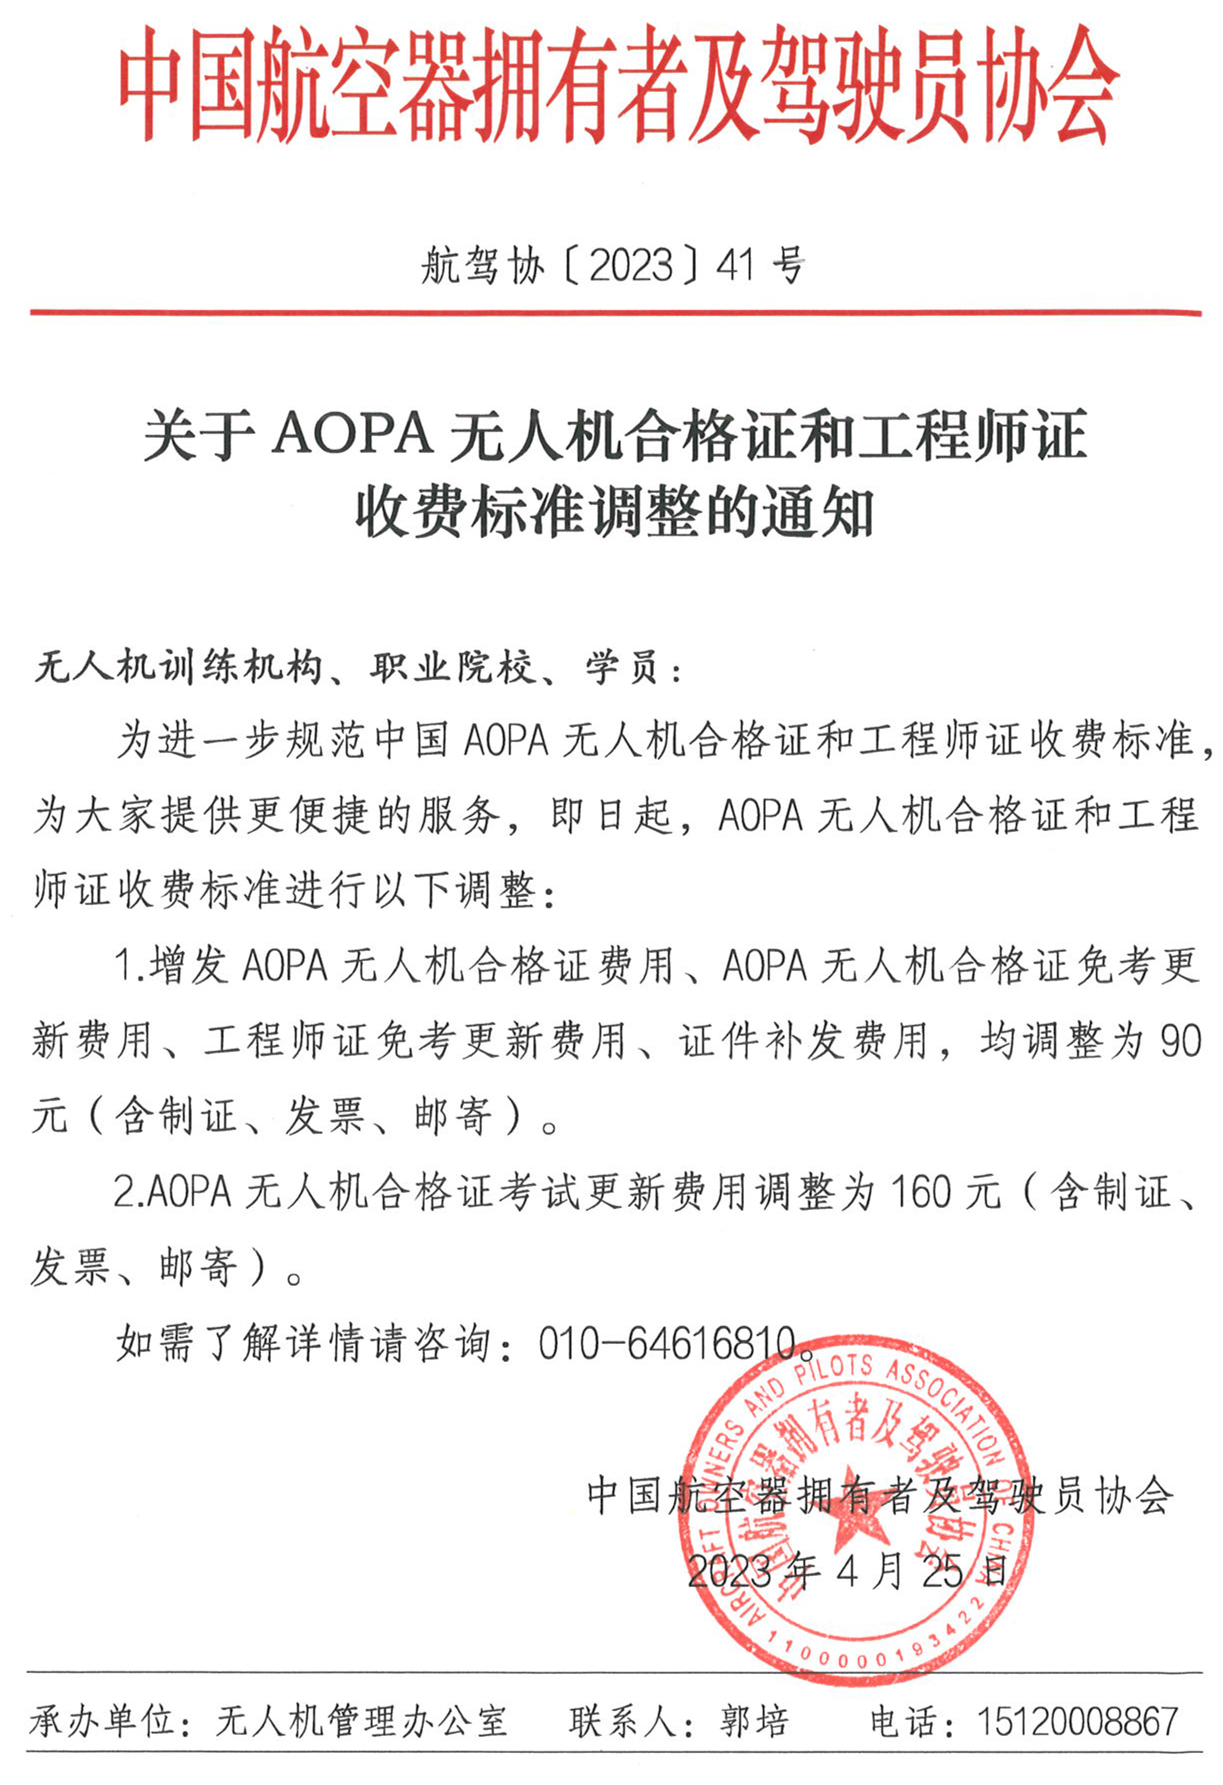 〔2023〕关于AOPA无人机合格证和工程师证费用调整的通知盖章(1).png